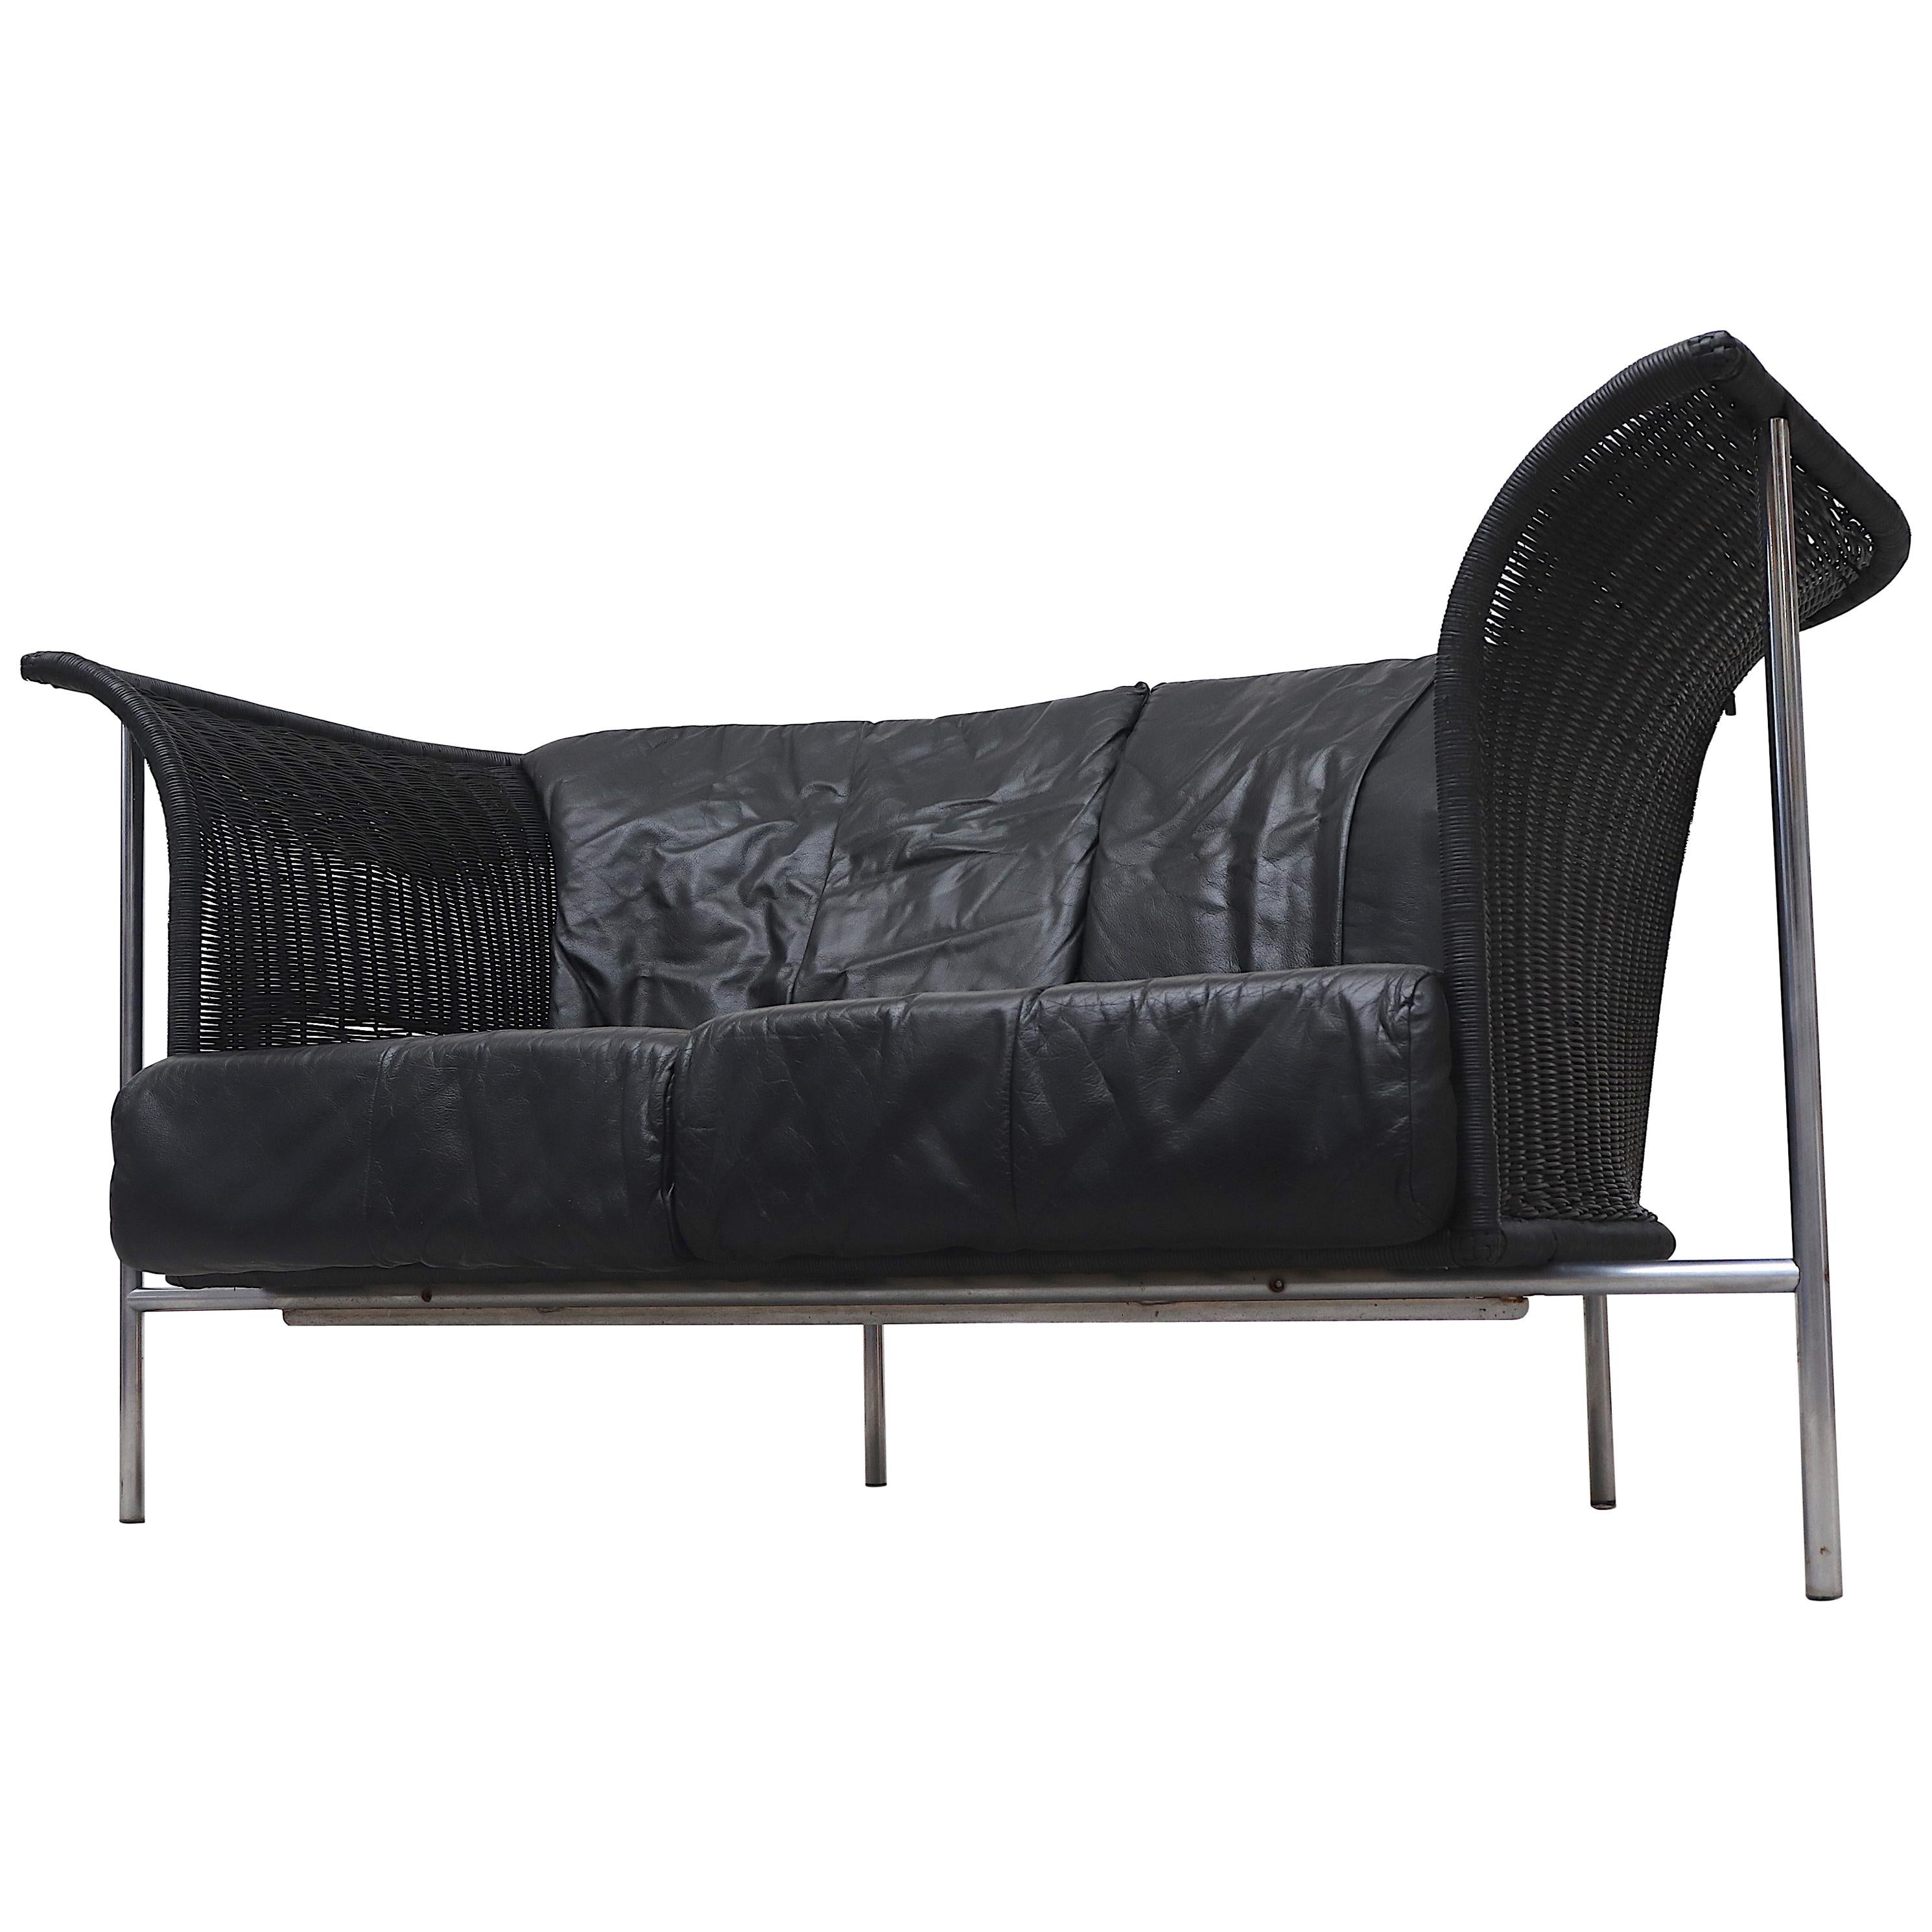 Gerard van den Berg Style Wing Back Black Rattan Loveseat Sofa